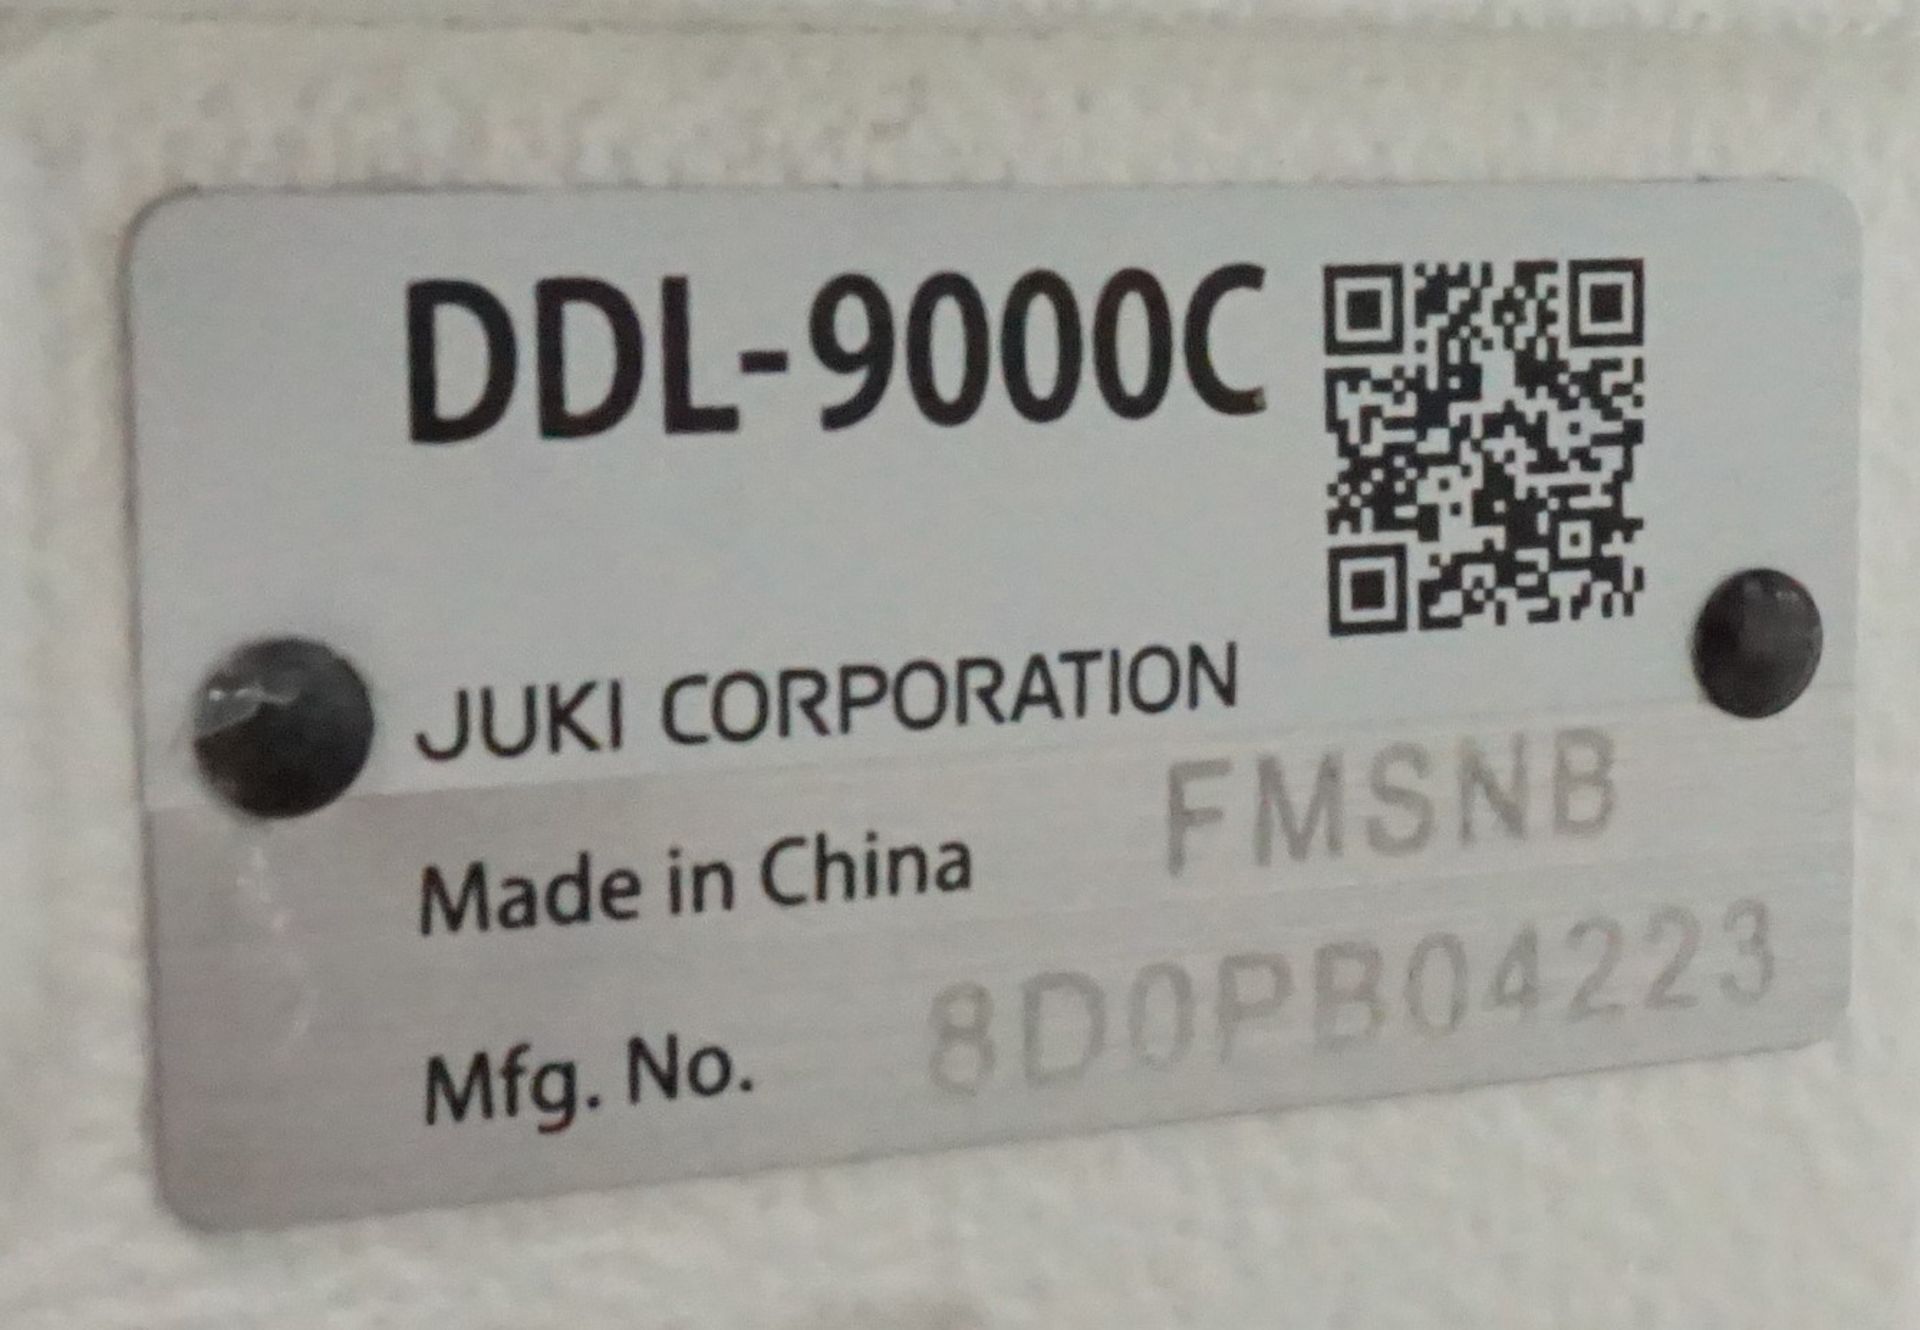 JUKI DDL-9000C SMART LOCKSTITCH MACHINE, S/N 8DOPB04223 - Image 4 of 4